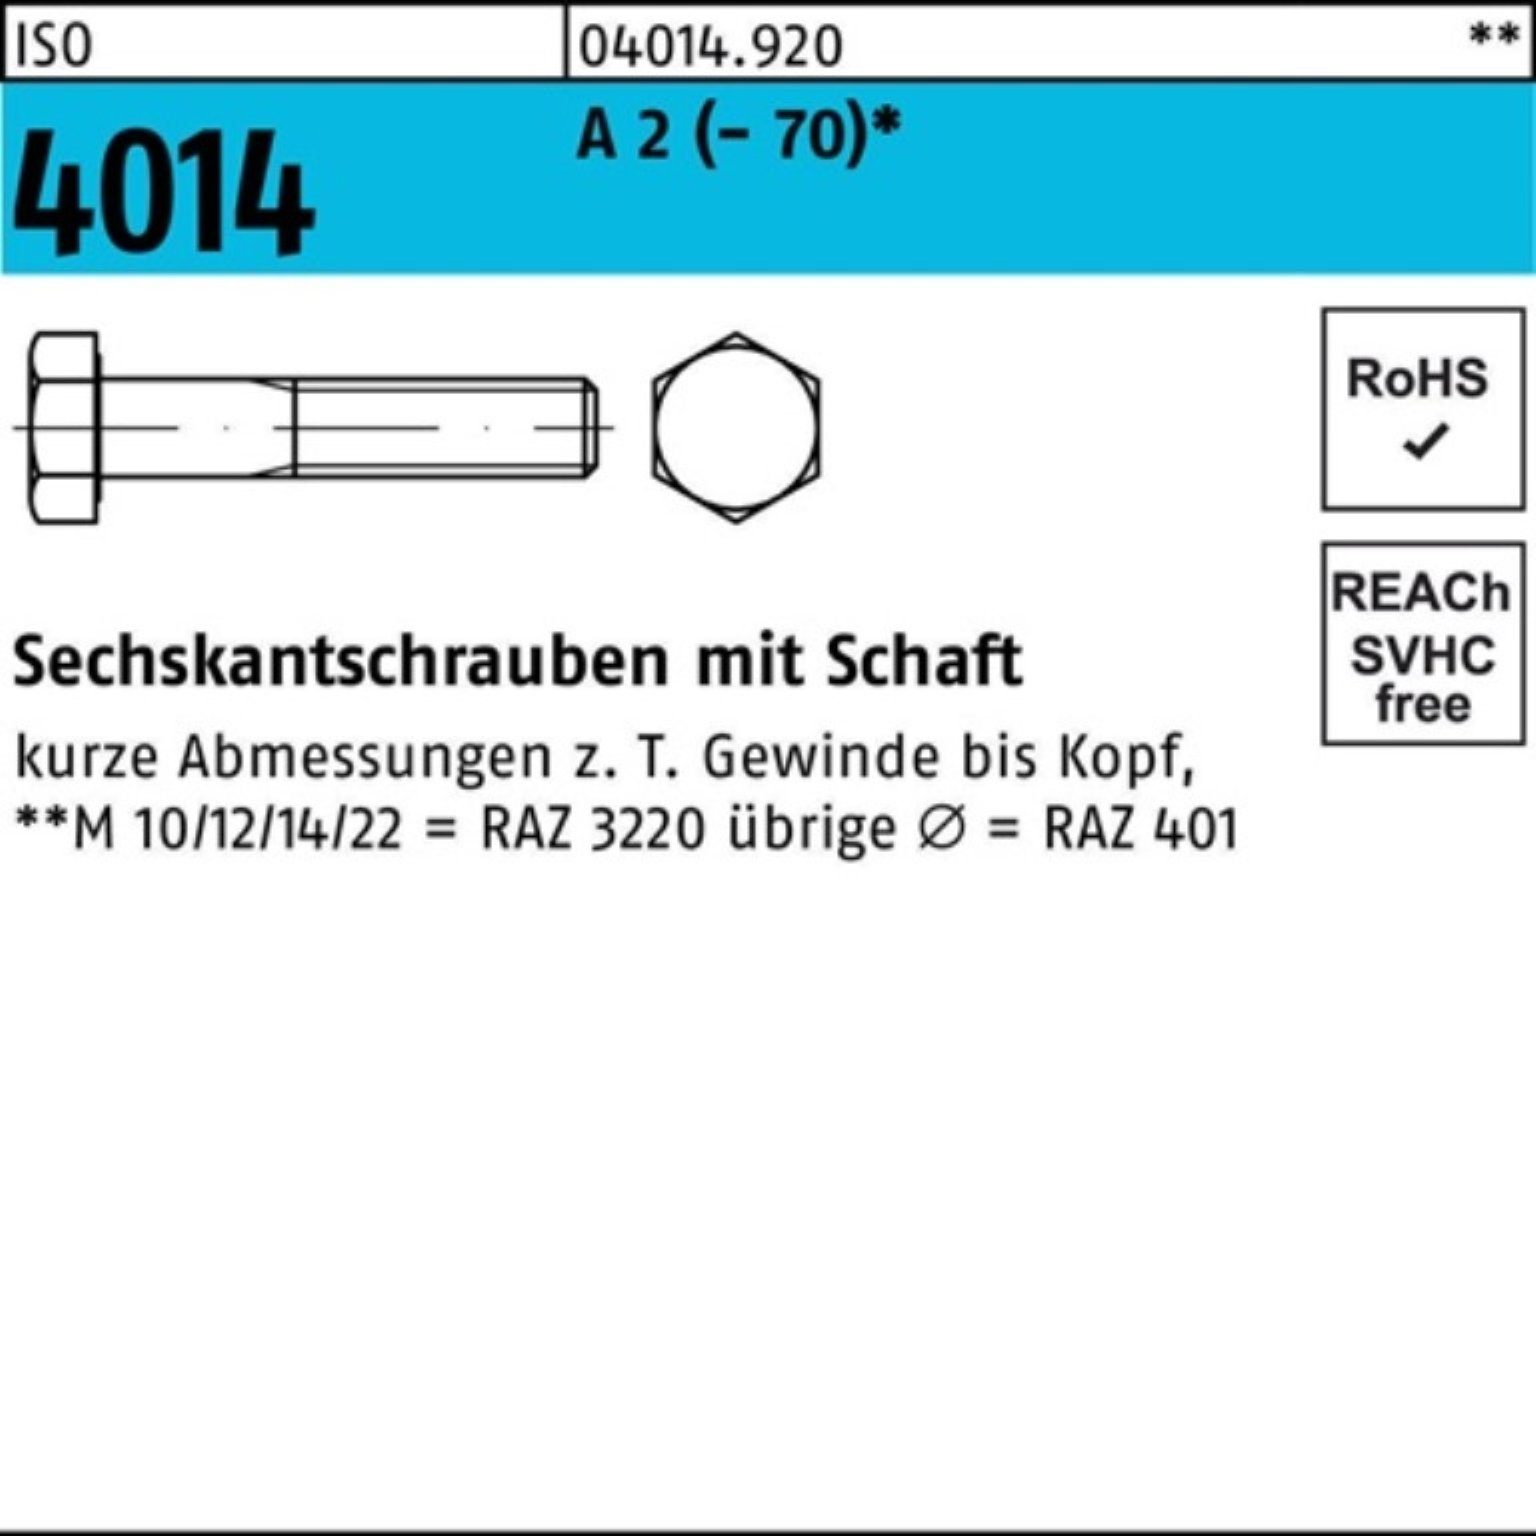 Sechskantschraube Pack 4014 M36x 1 ISO 130 Bufab A ISO 100er Stück Schaft Sechskantschraube 2